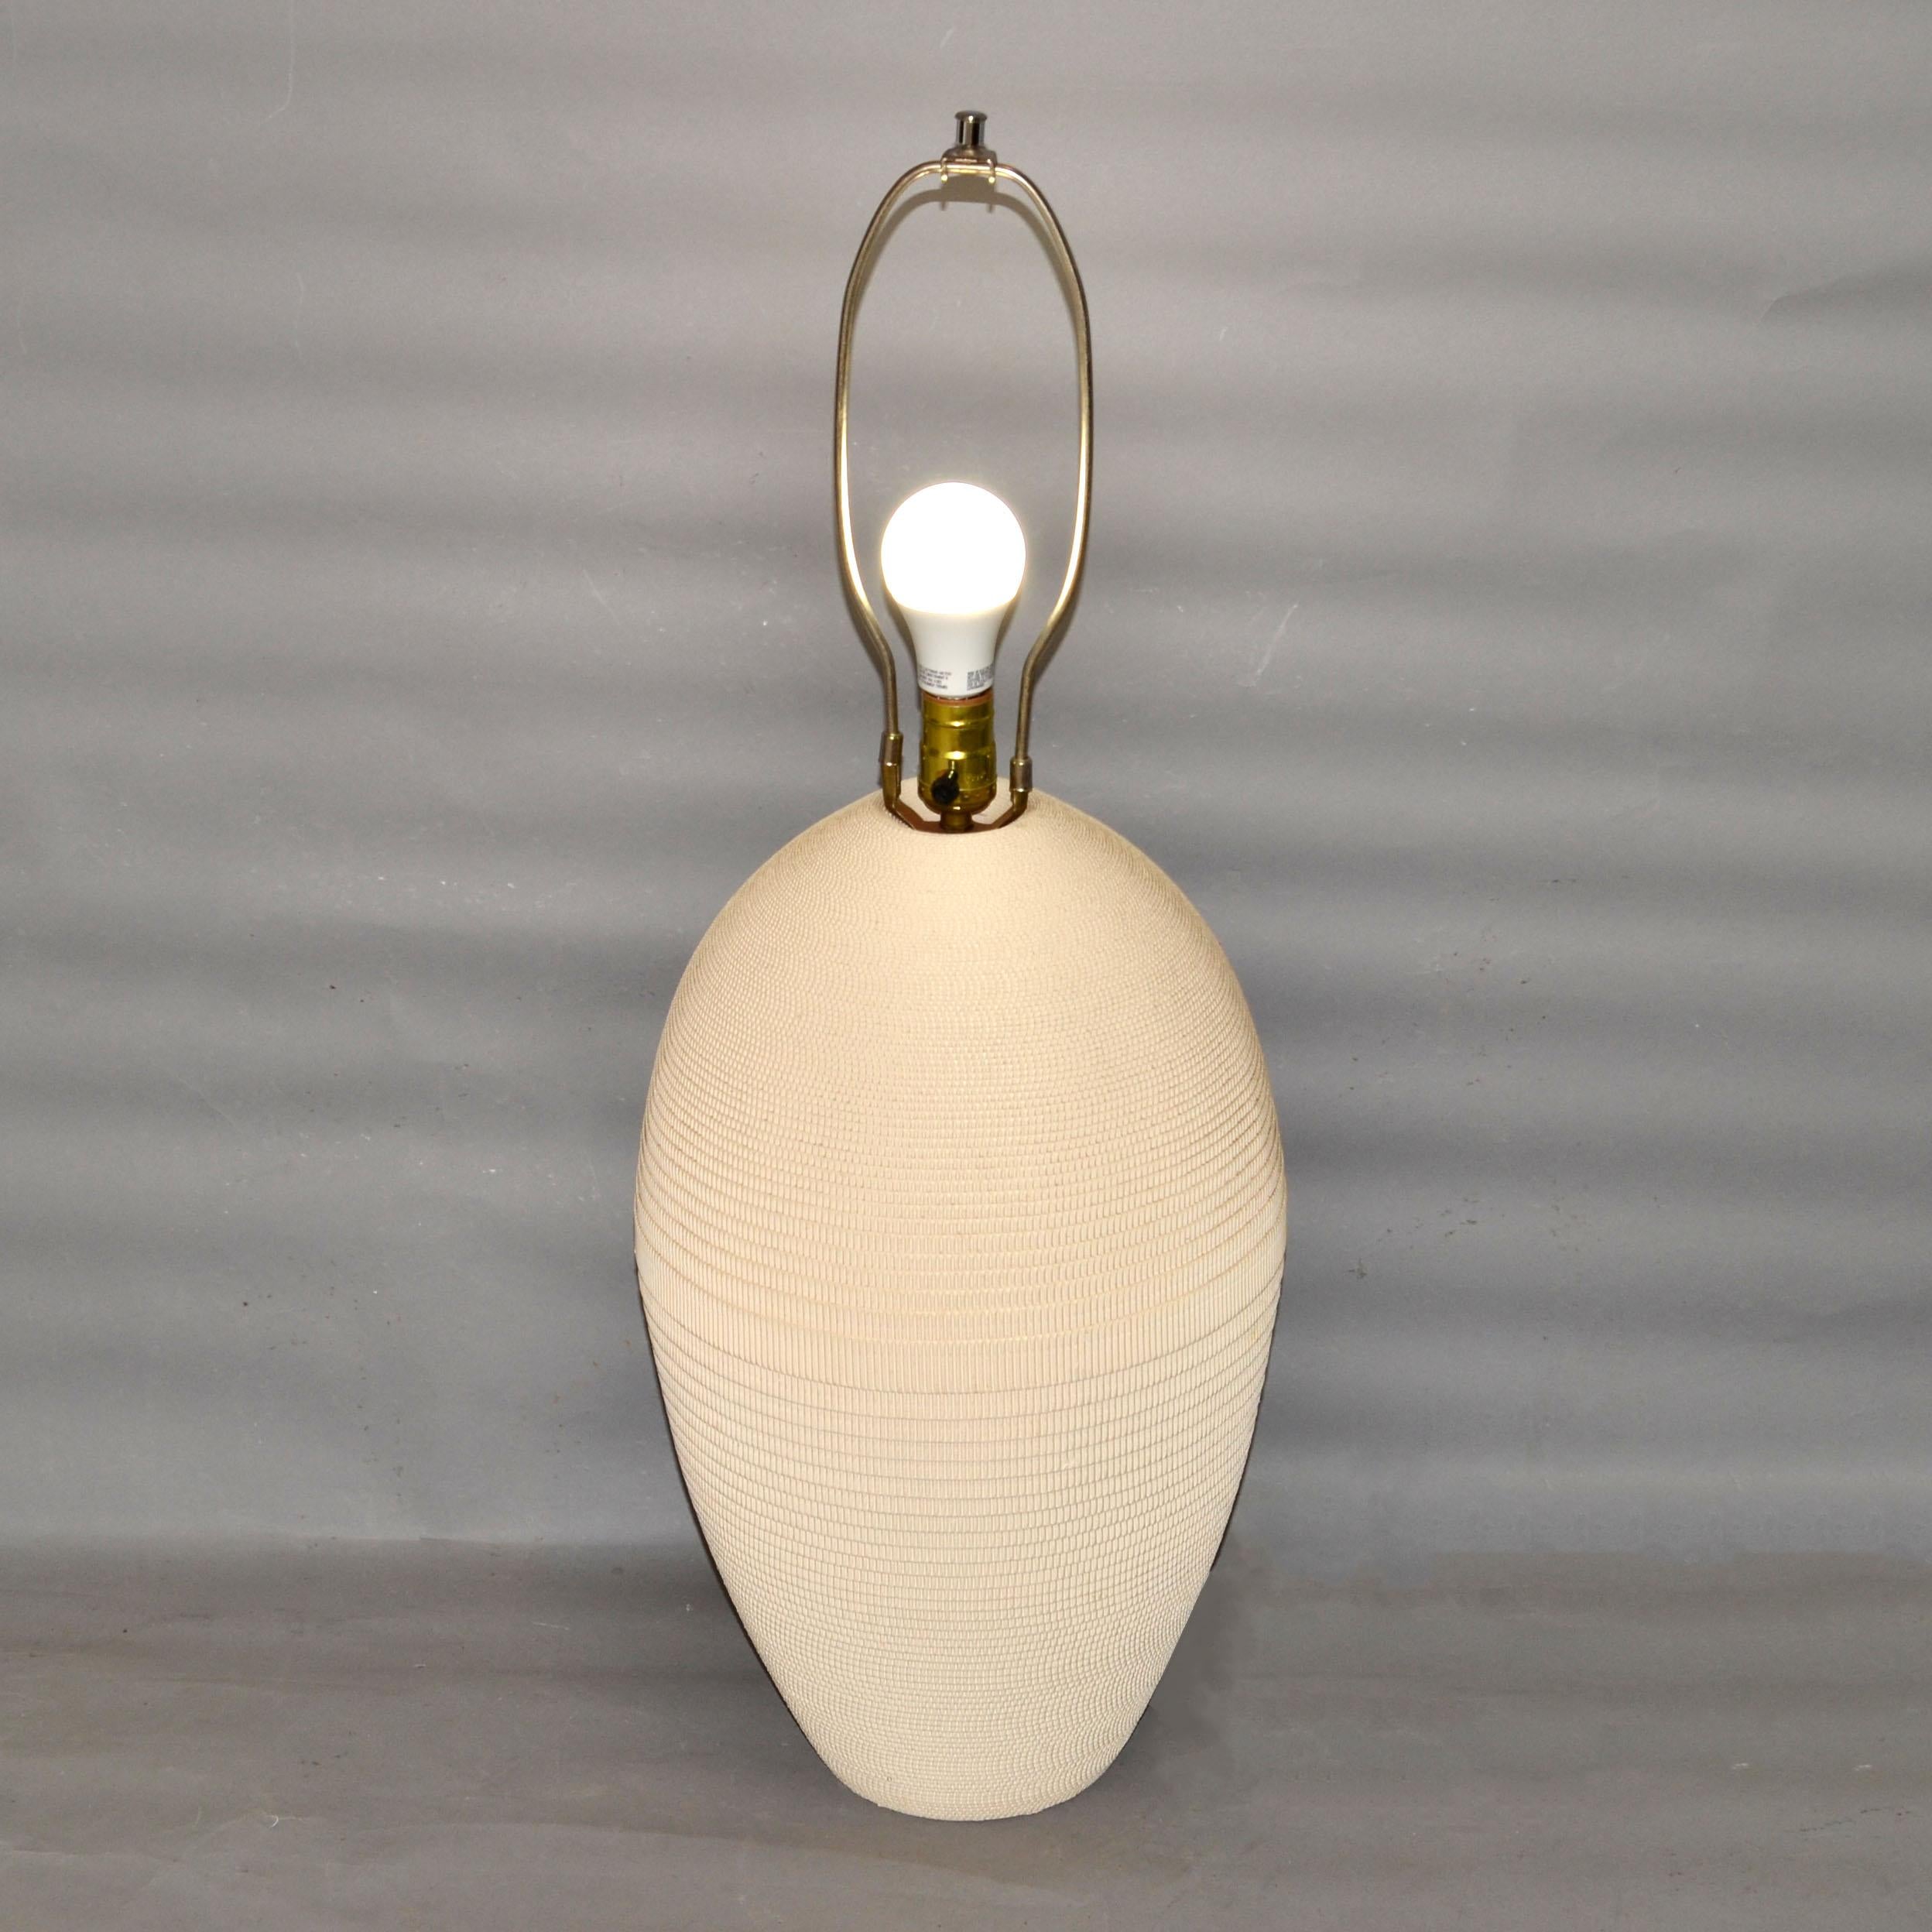 Amerikanische 1980er Jahre Mid-Century Modern antike weiße Wellpappe Tischlampe entworfen von Gregory Van Pelt und hergestellt von Flute of Chicago.
In einwandfreiem Zustand und nimmt eine normale oder LED-Glühbirne.
Kein Schatten.